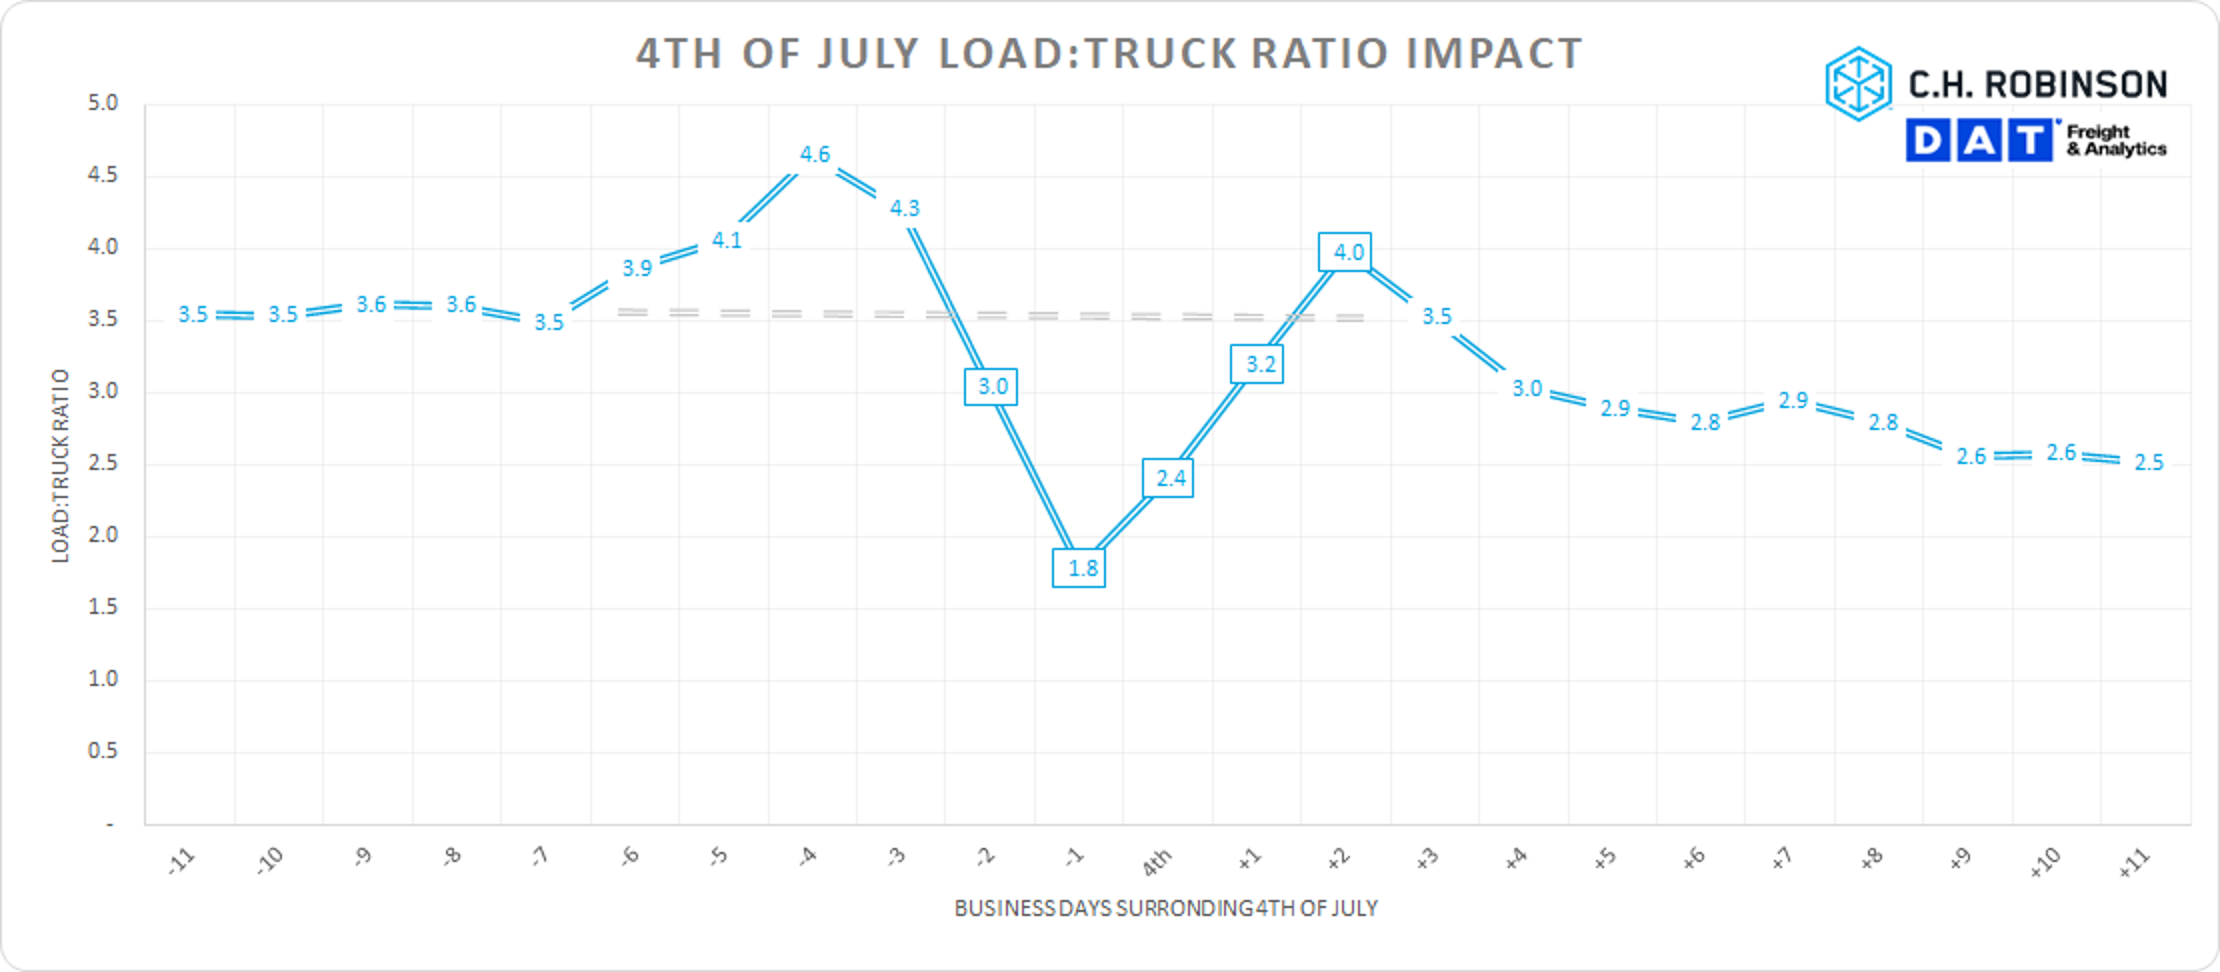 7月4日装载卡车比率的影响